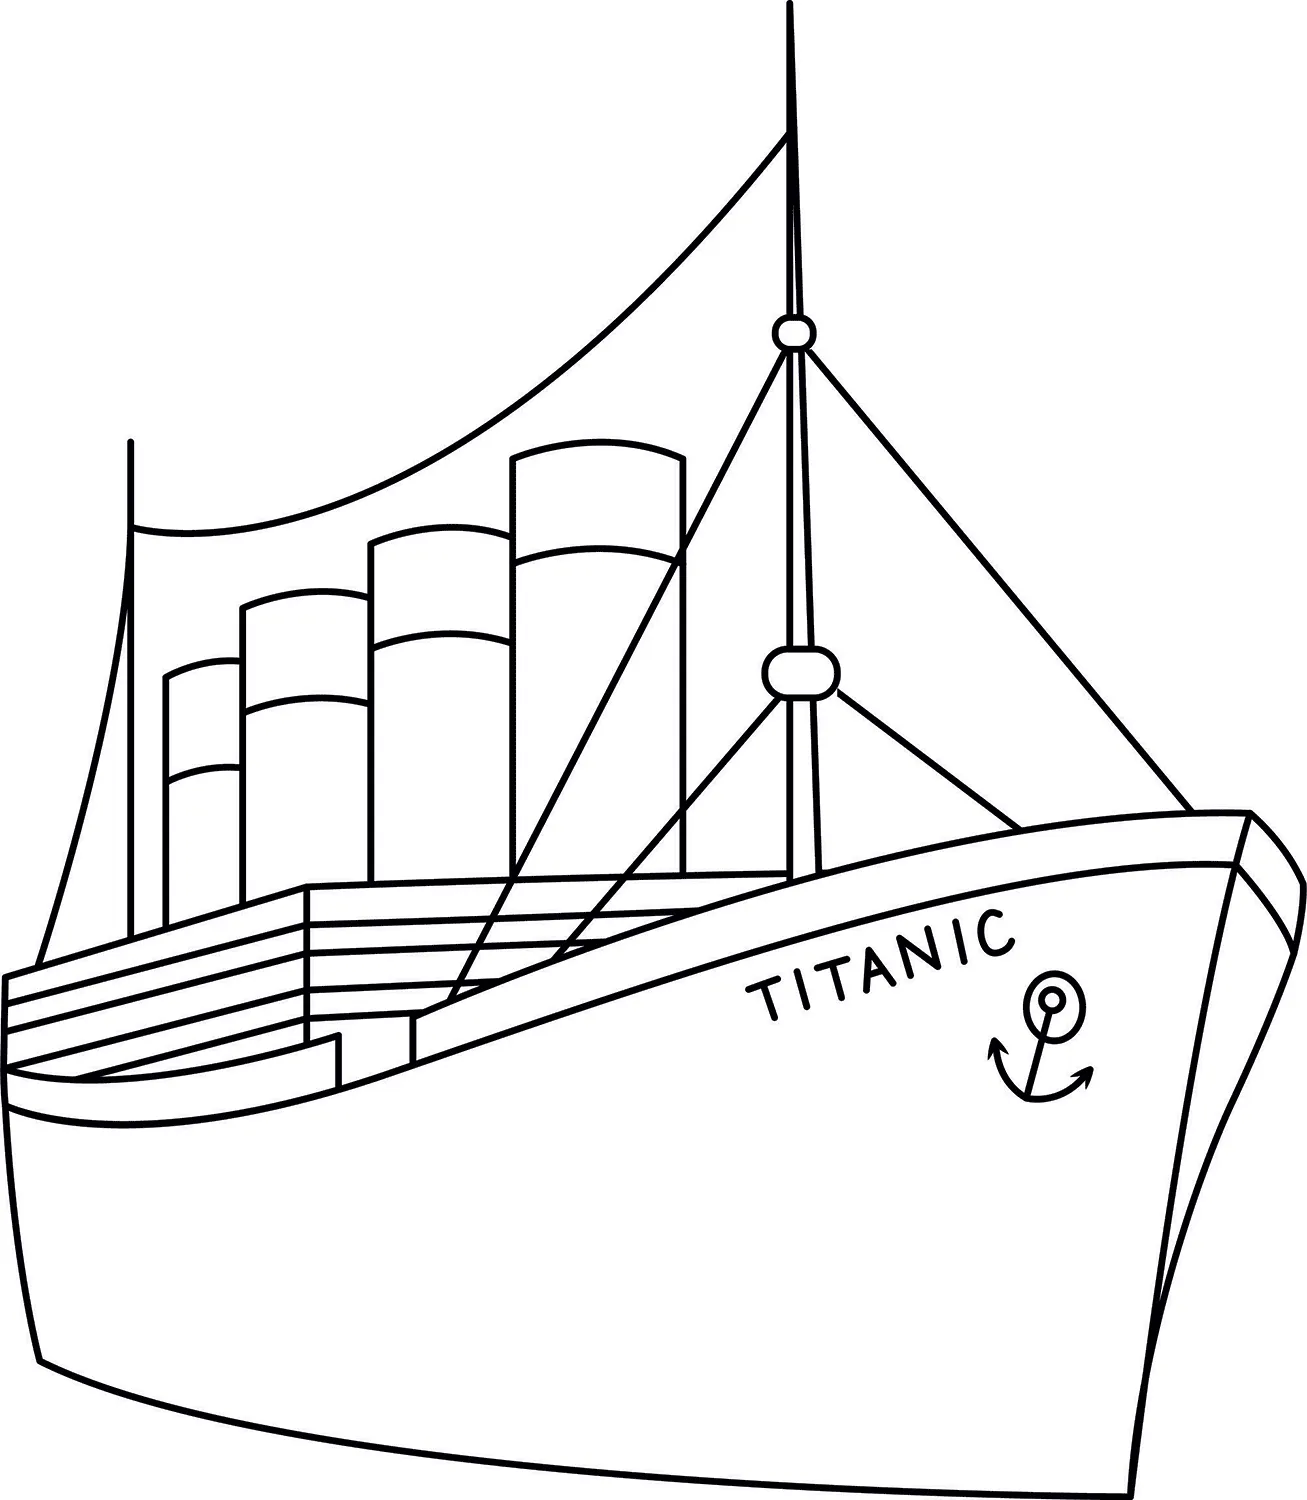 Plantilla imprimible del Titanic | Manualidades de papel para niños